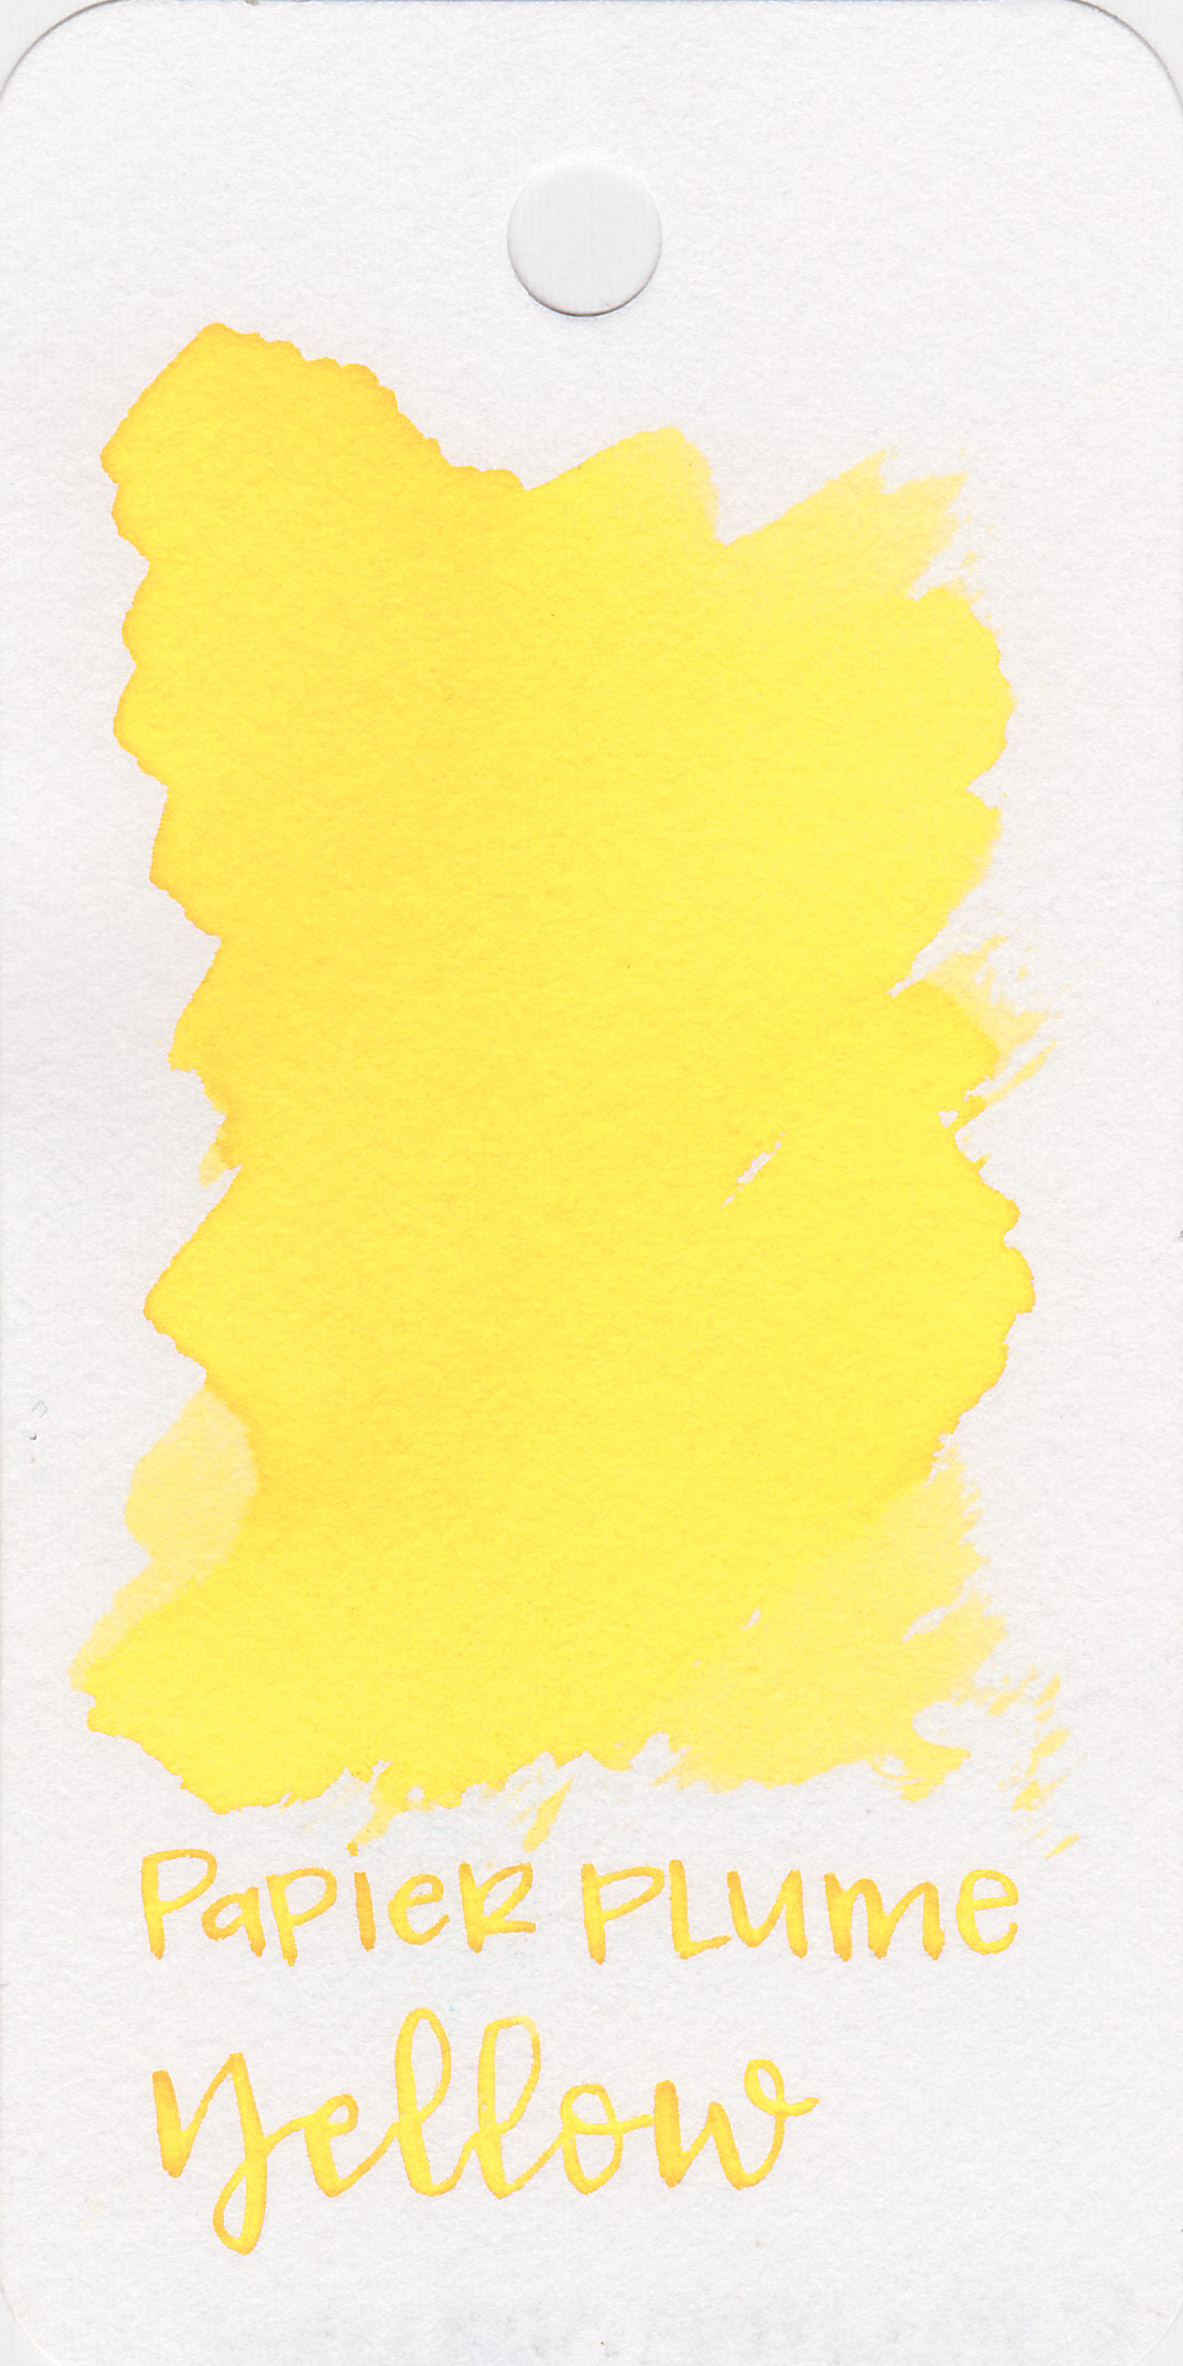 pp-yellow-1.jpg